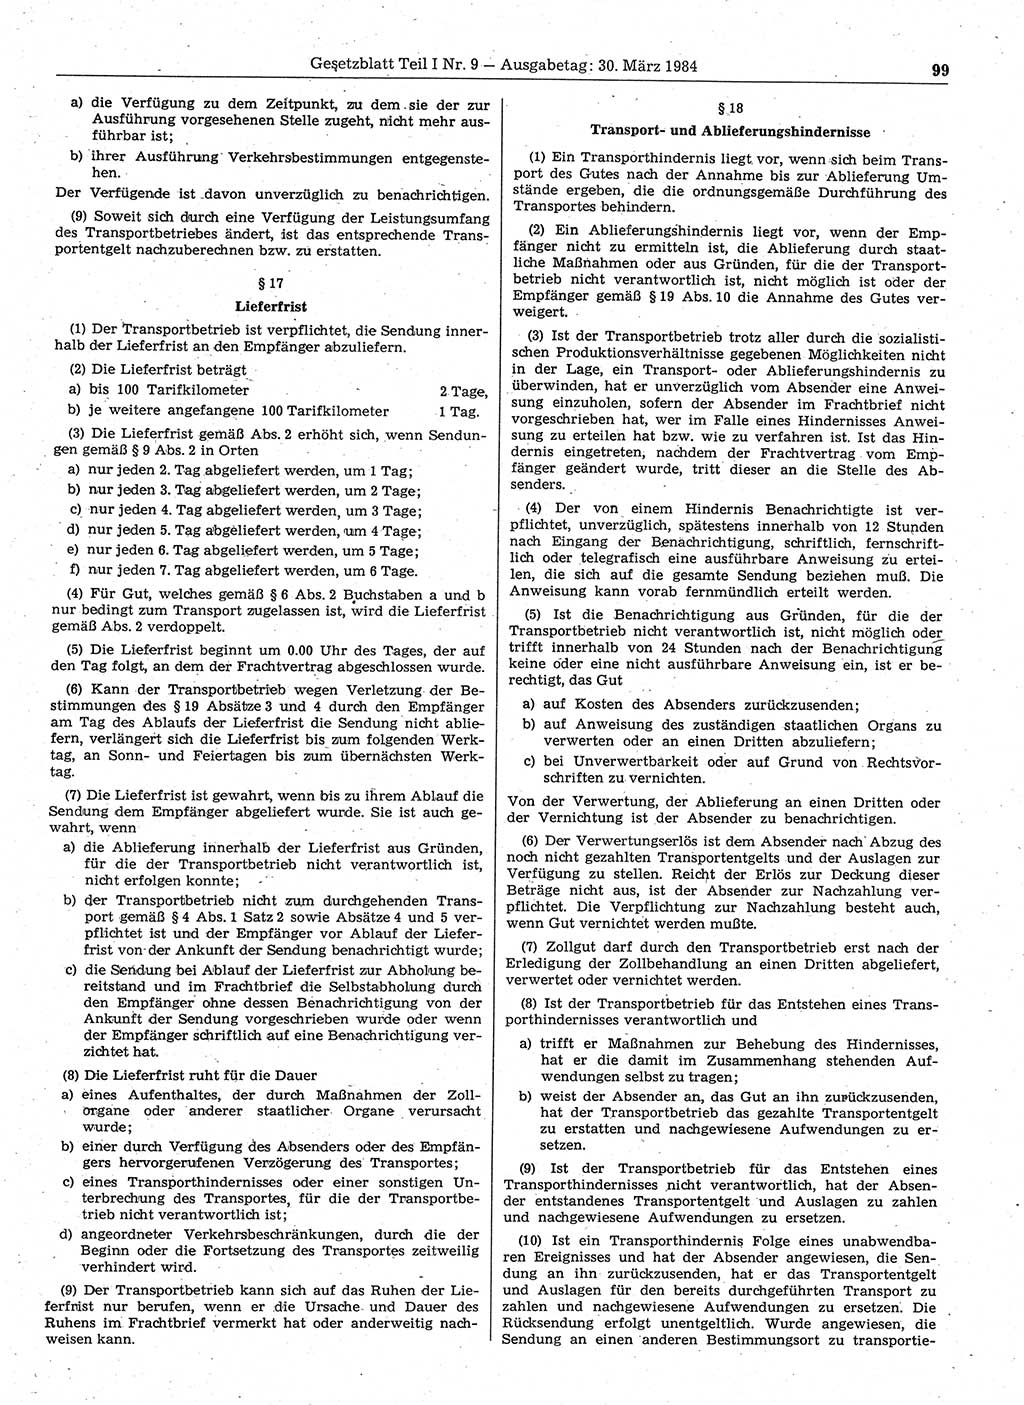 Gesetzblatt (GBl.) der Deutschen Demokratischen Republik (DDR) Teil Ⅰ 1984, Seite 99 (GBl. DDR Ⅰ 1984, S. 99)